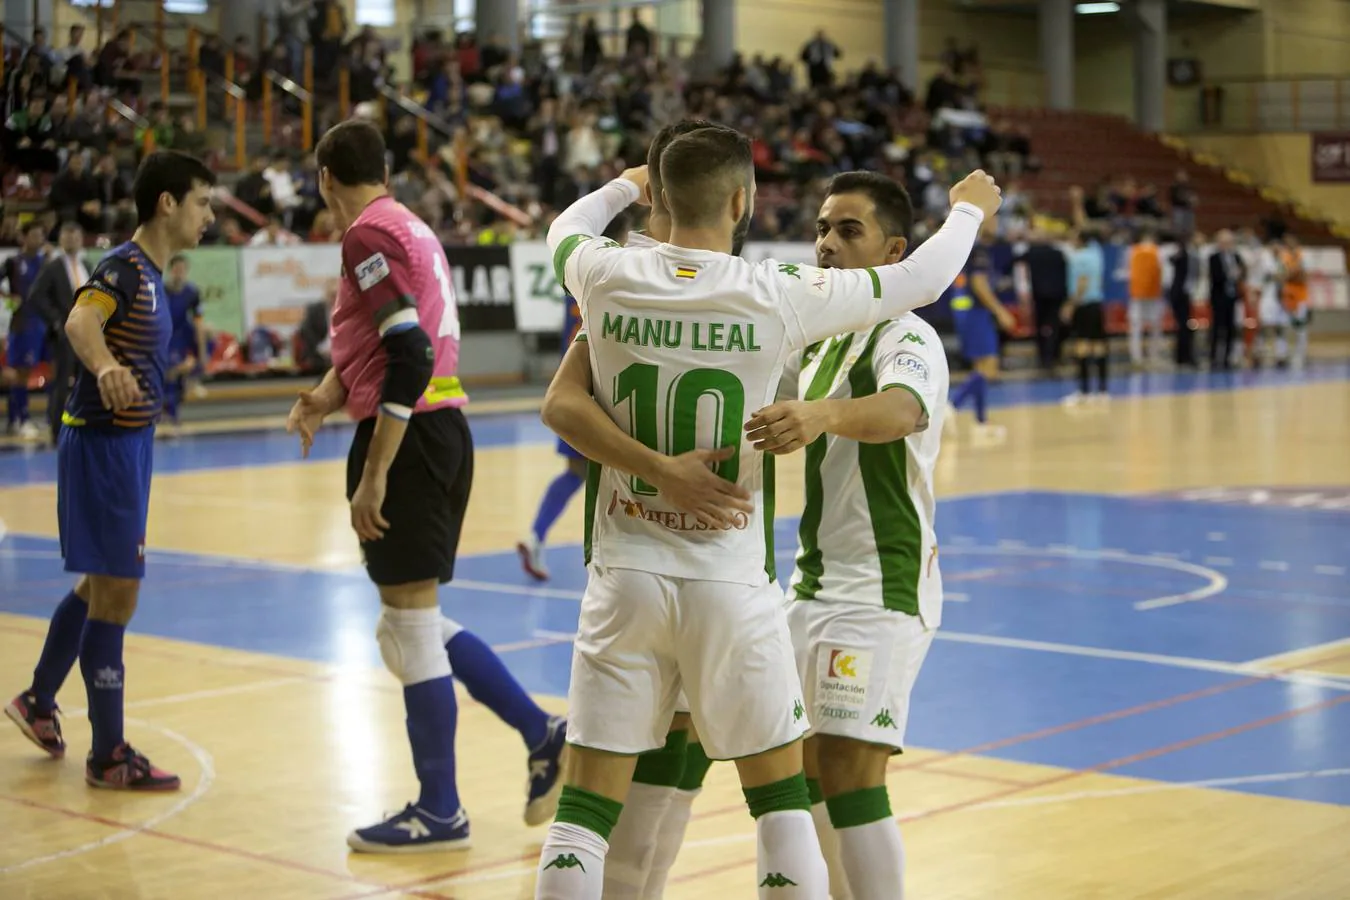 El Córdoba CF Futsal-Colo Colo, en imágenes